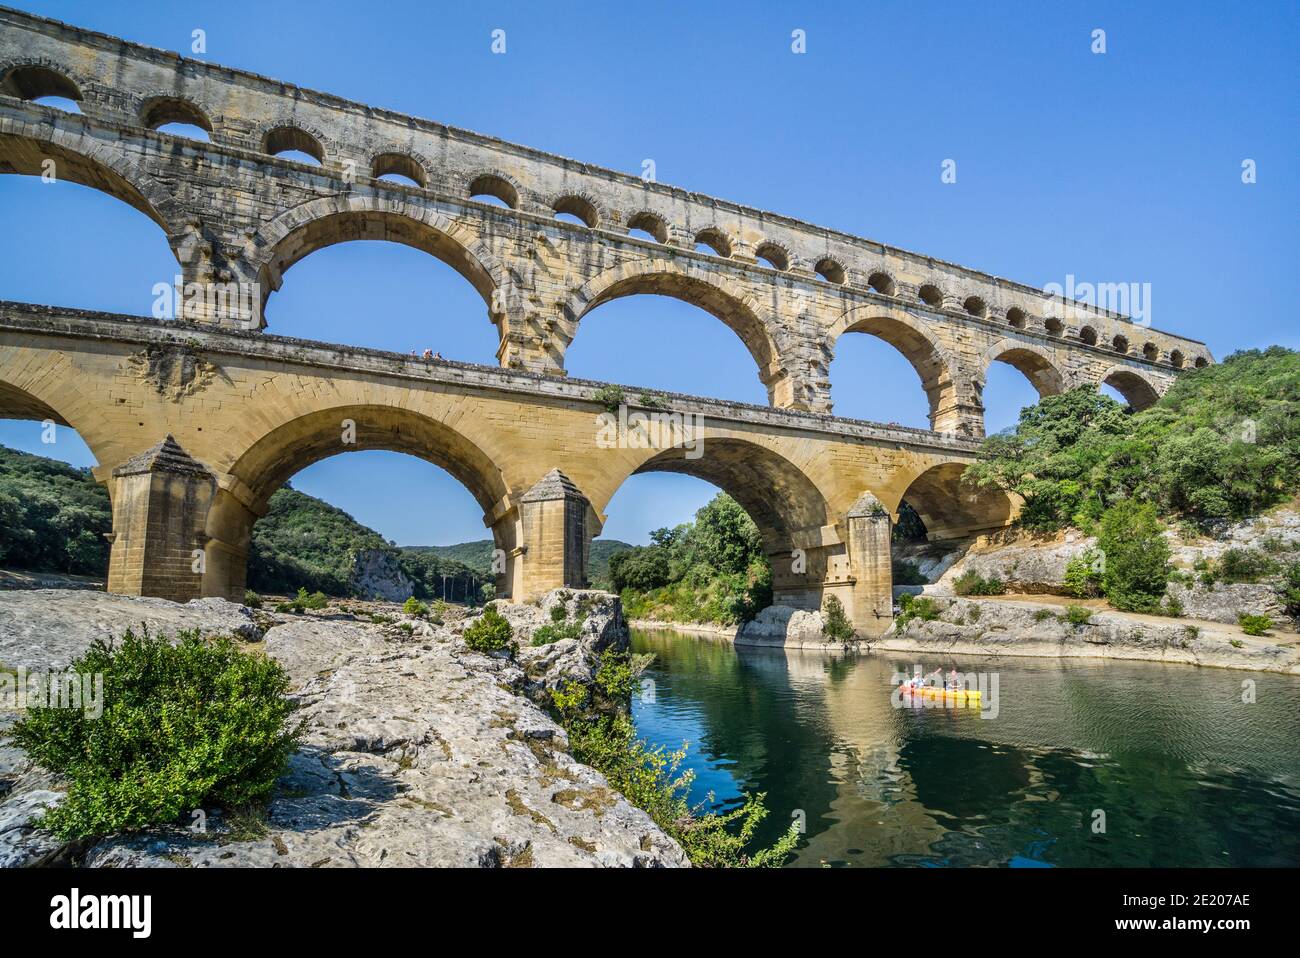 Die alte römische Aquädukt Brücke von Pont du Gard über den Fluss Gardon, im ersten Jahrhundert n. Chr. gebaut, um Wasser über 50 km zur römischen Kolonie zu transportieren Stockfoto